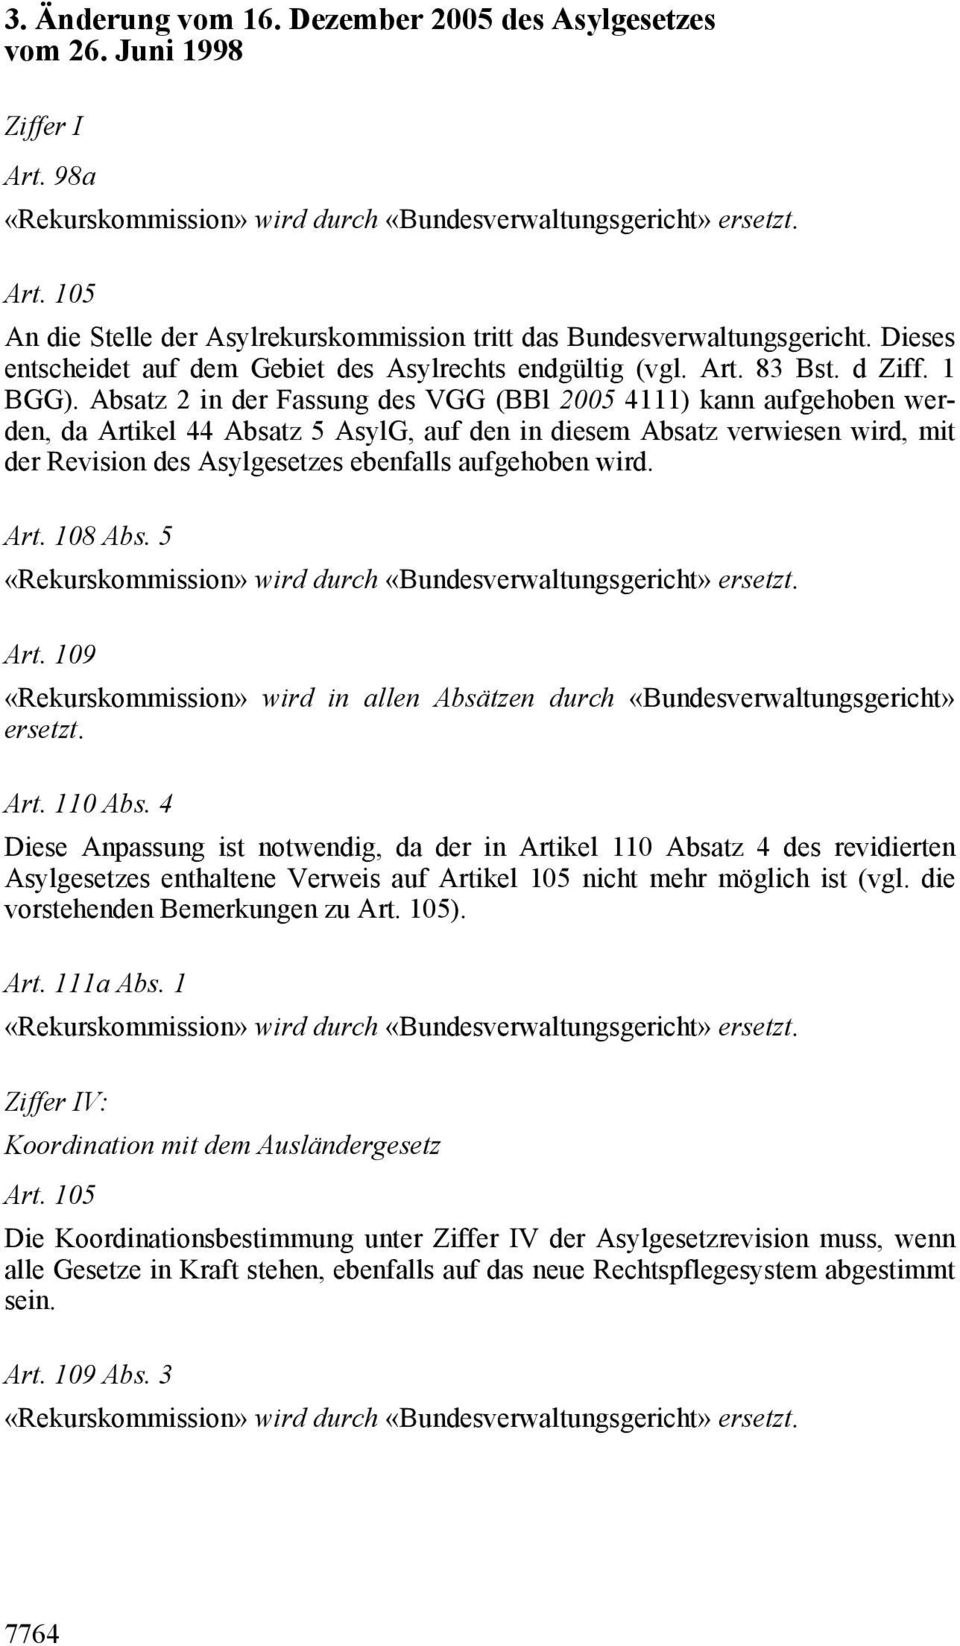 Absatz 2 in der Fassung des VGG (BBl 2005 4111) kann aufgehoben werden, da Artikel 44 Absatz 5 AsylG, auf den in diesem Absatz verwiesen wird, mit der Revision des Asylgesetzes ebenfalls aufgehoben